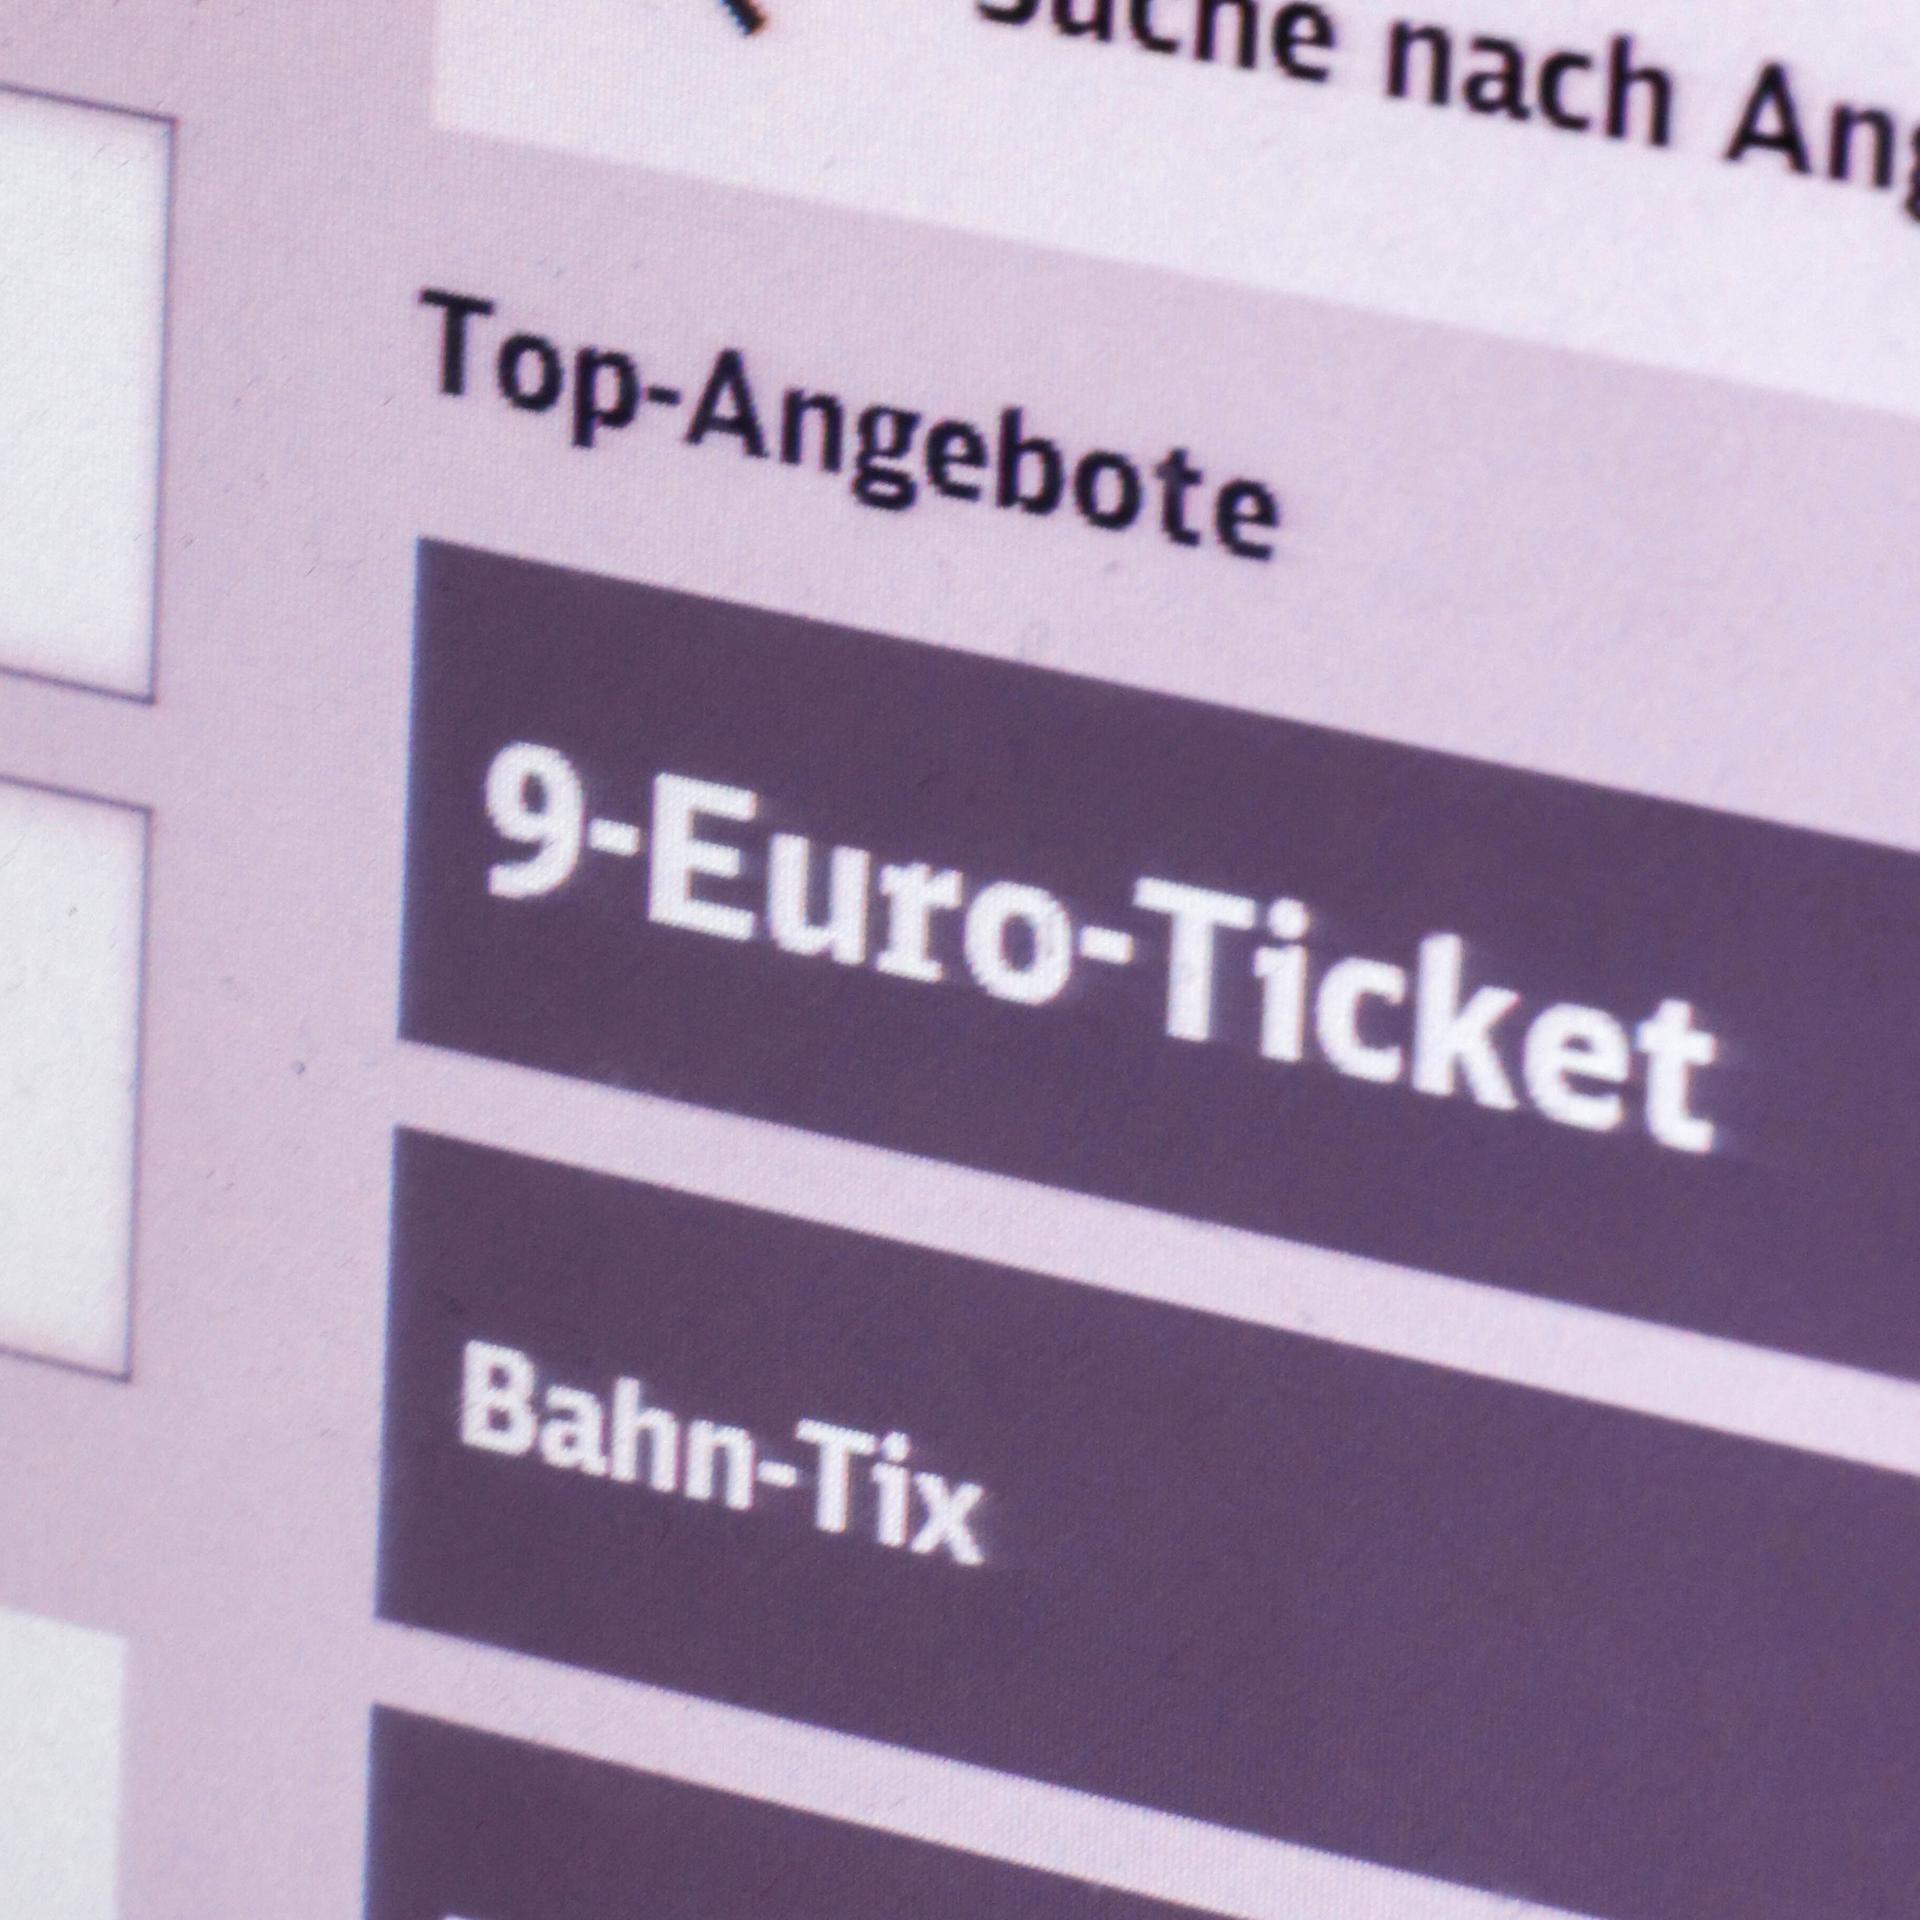 Auf dem Display eines Fahrscheinautomaten wird in der Rubrik "Top-Angebote" ein 9-Euro-Ticket angeboten.